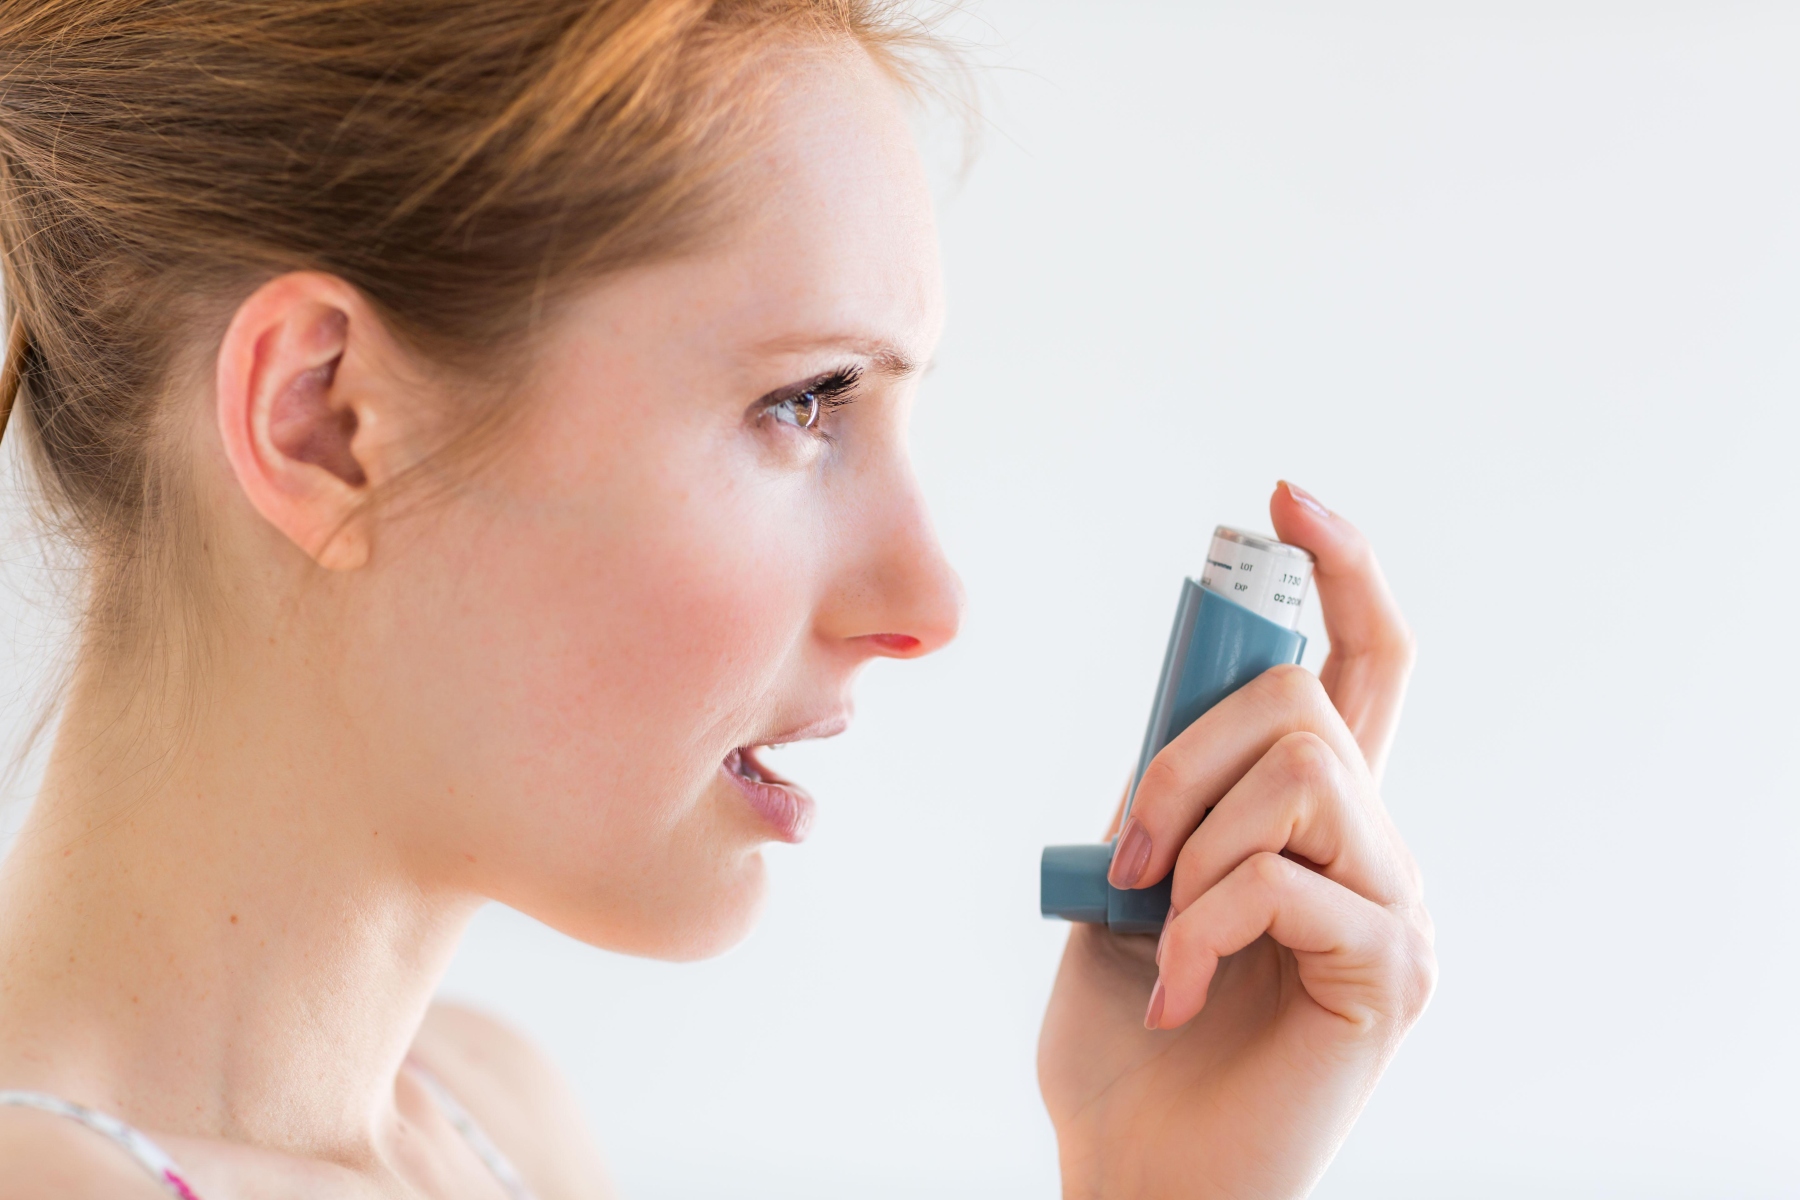 Άσθμα: Υψηλότερος κίνδυνος καρκίνου σε ασθενείς με άσθμα